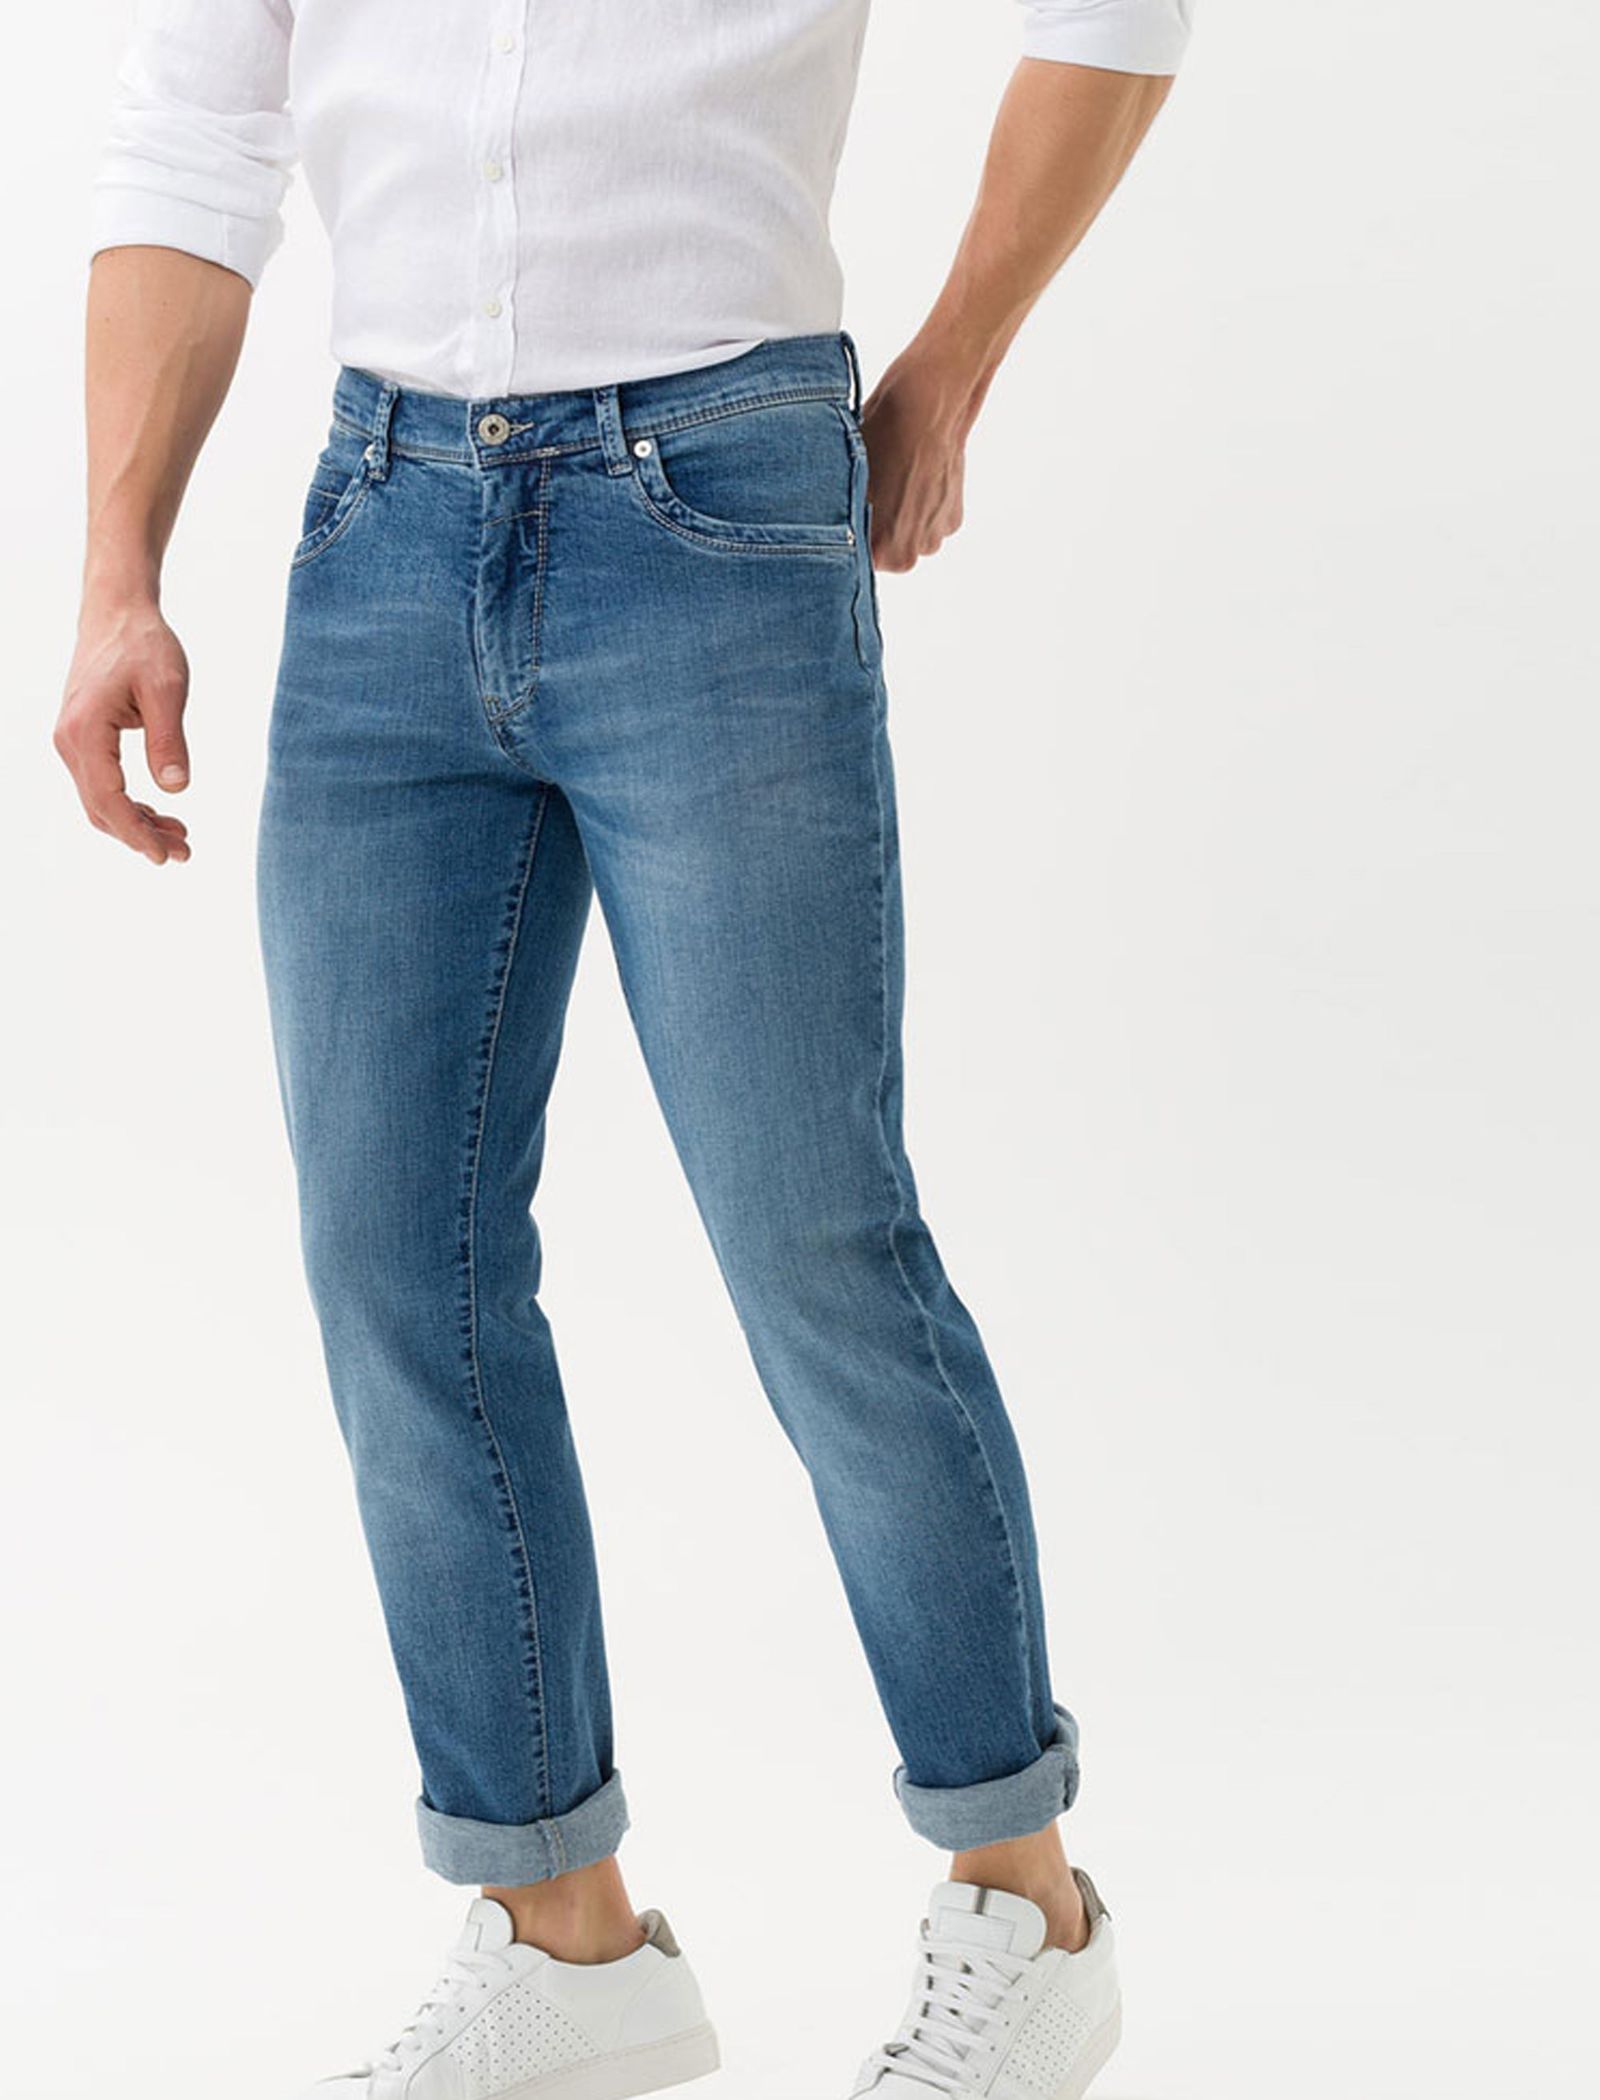 شلوار جین راسته مردانه Cadiz - برکس - آبي  - 6